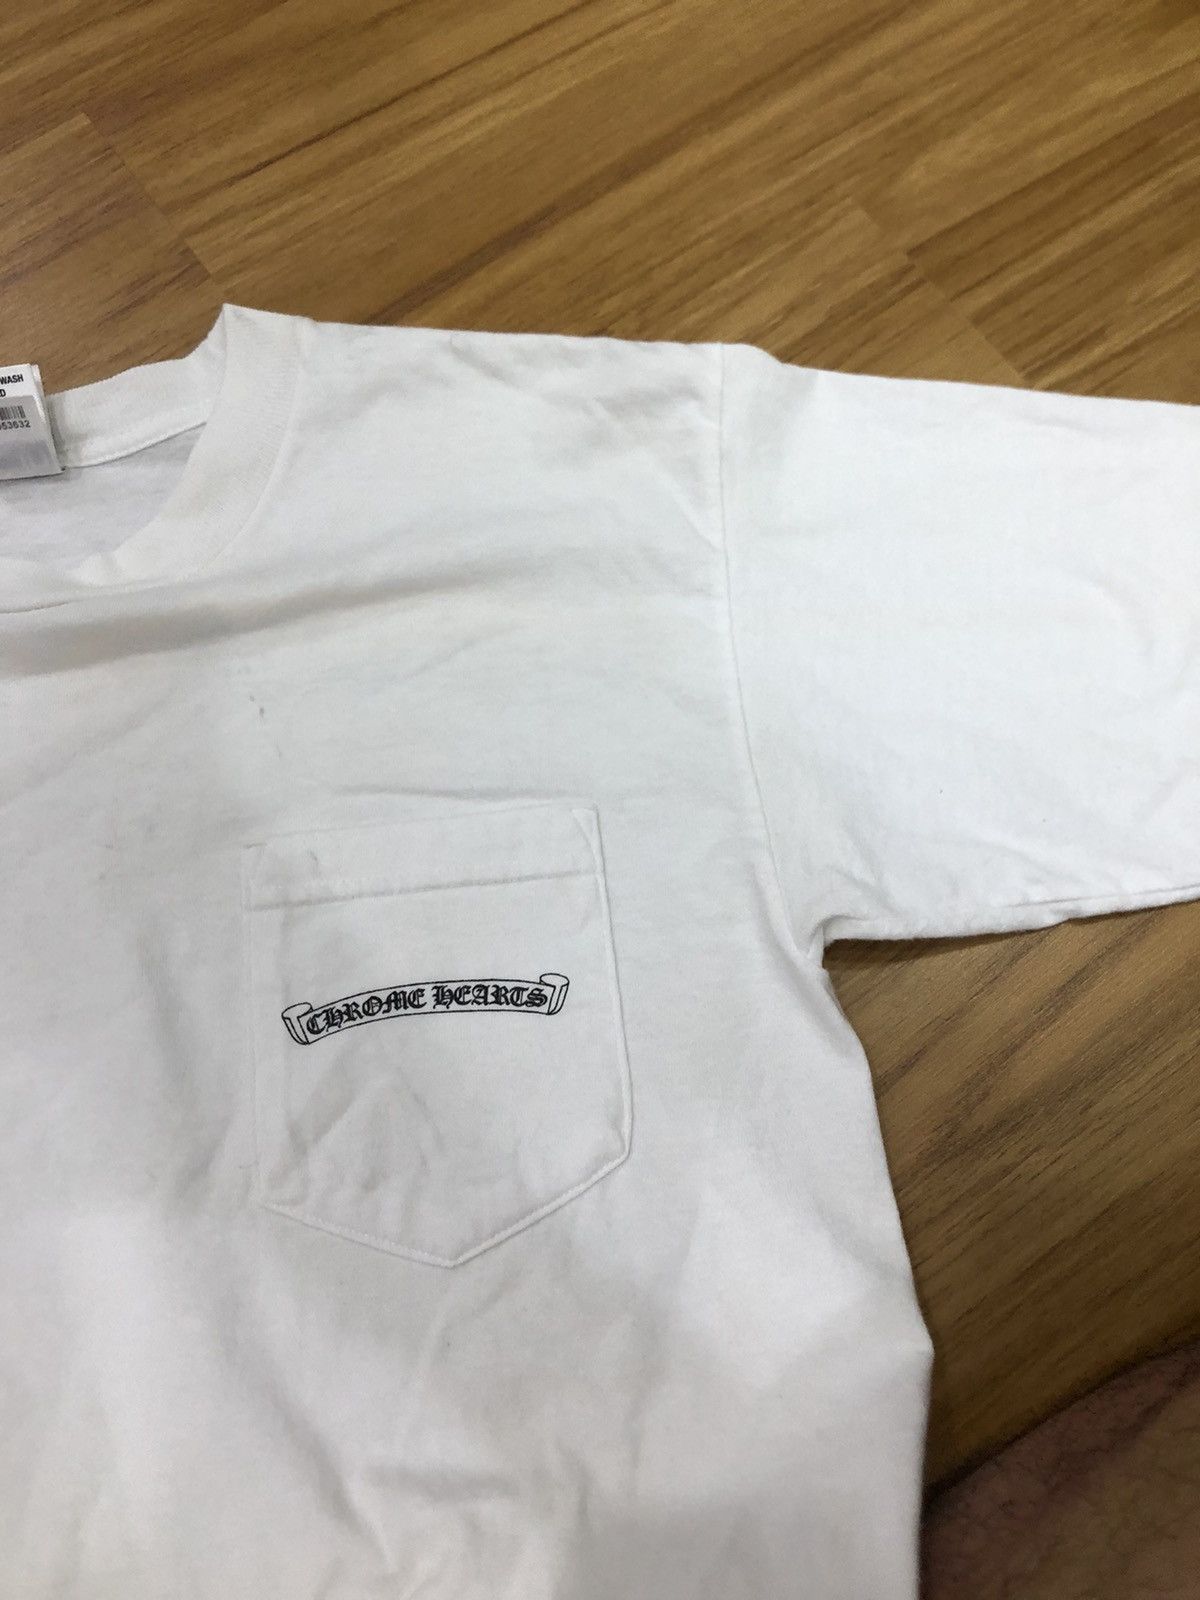 Chrome Hearts U.S.A. T-shirt (Japan Market) - 13